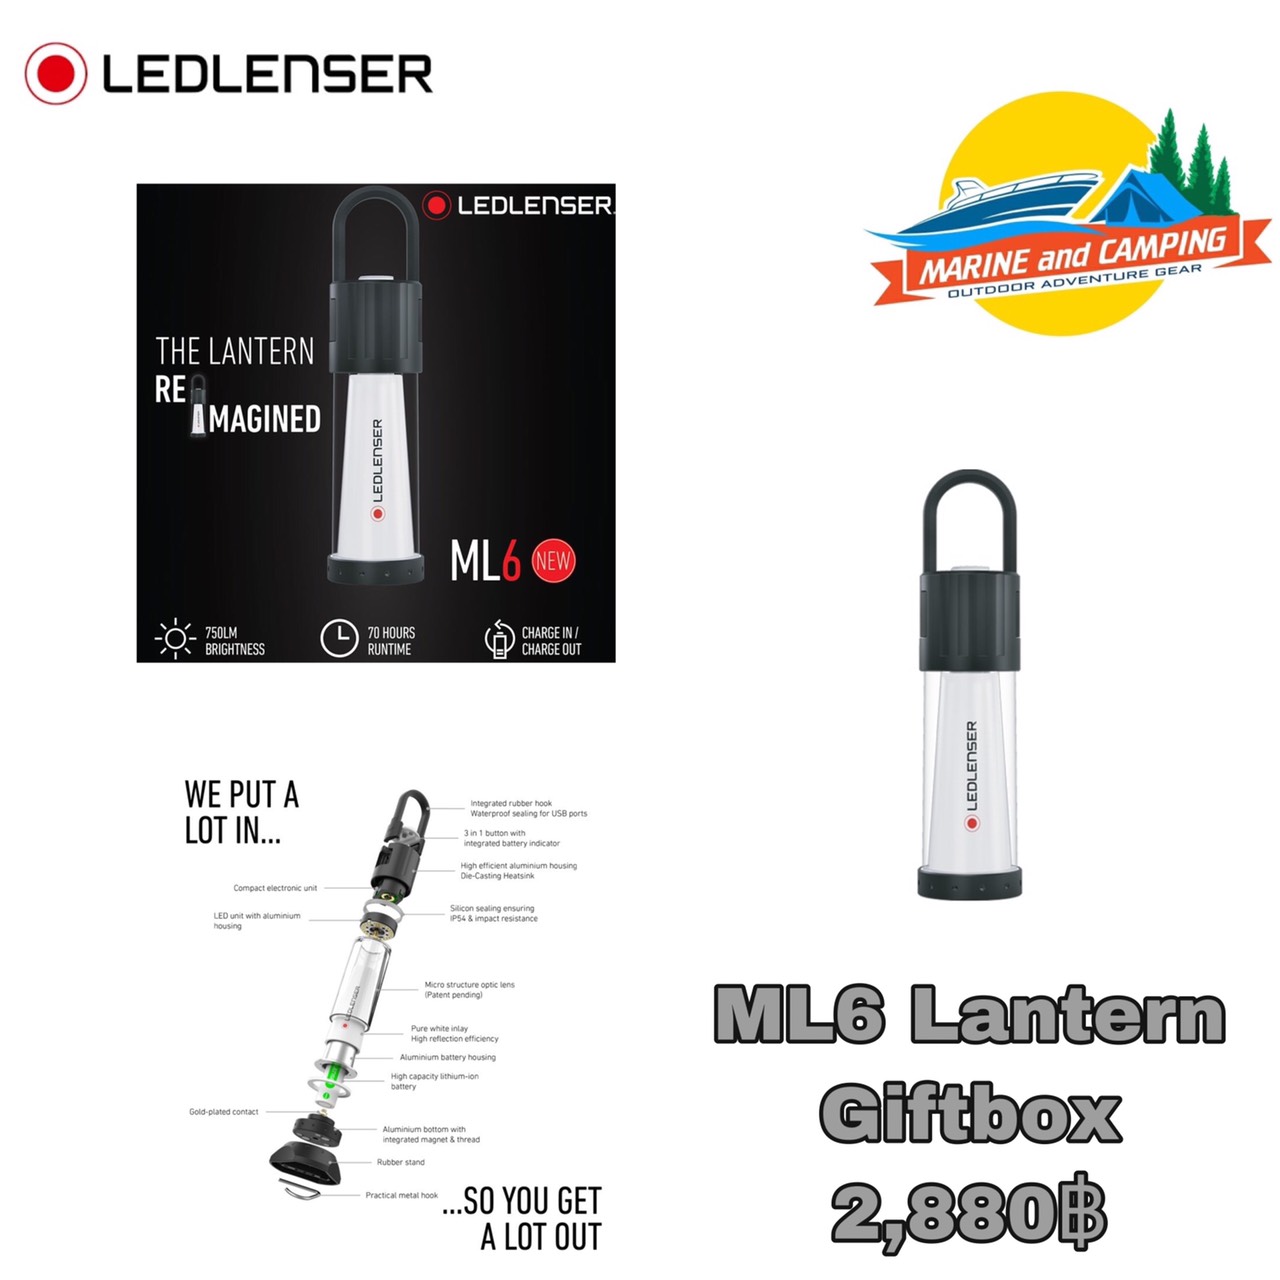 Ledlenser ML6 Lantern